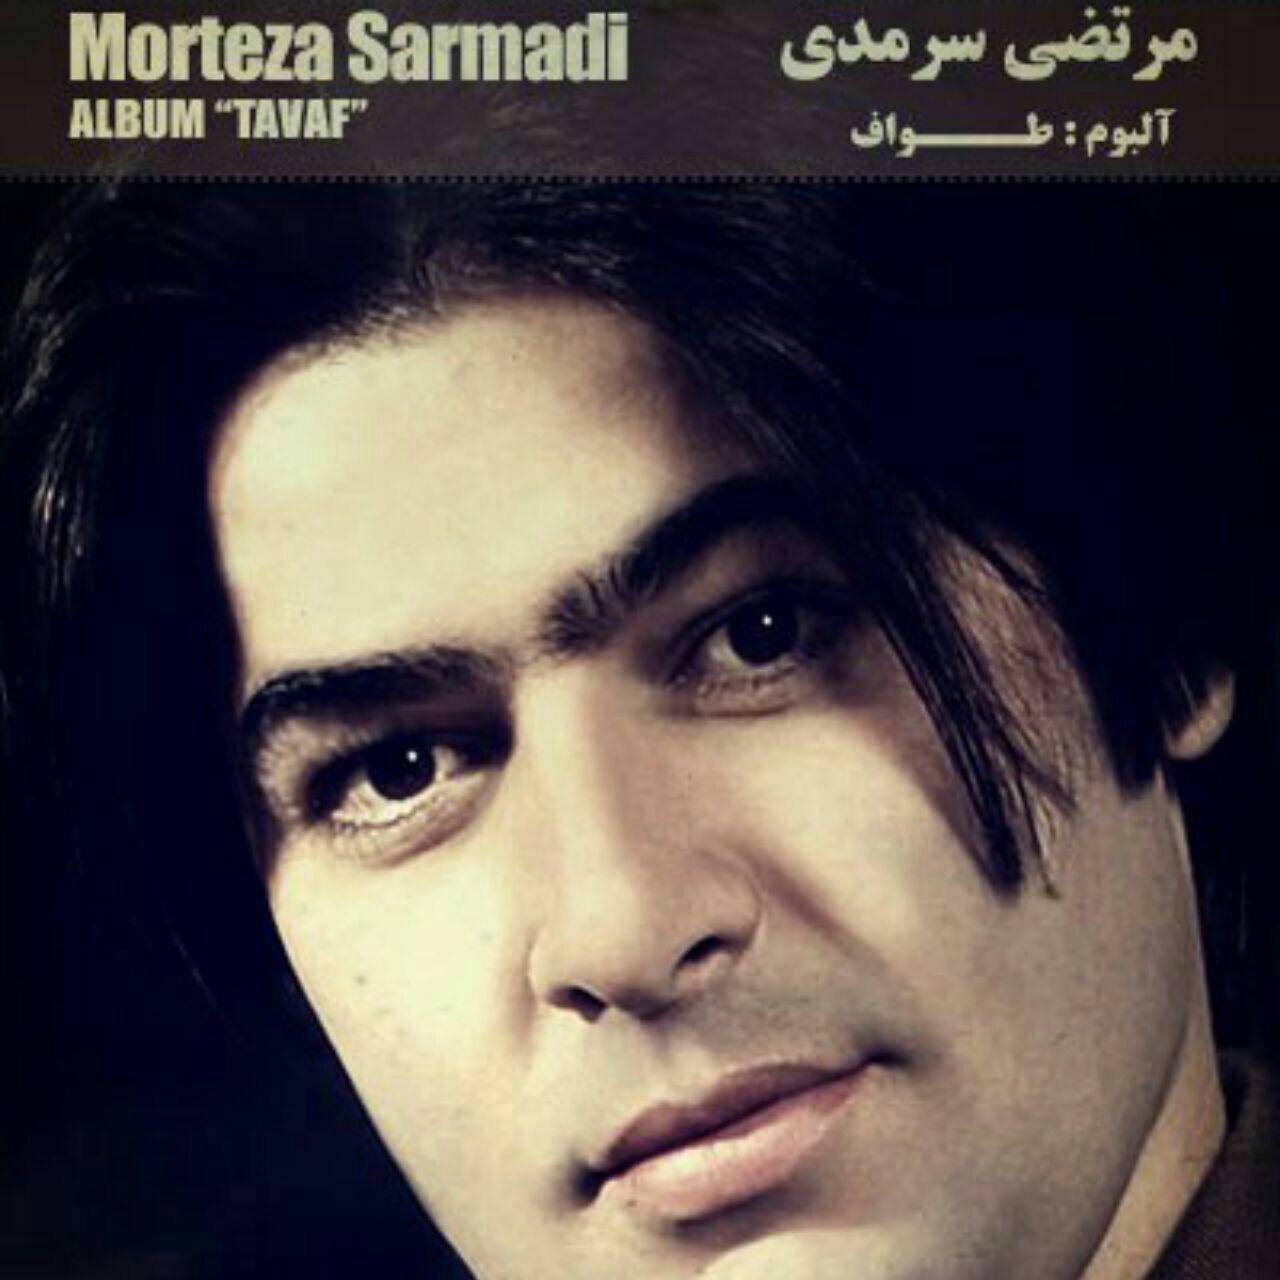  دانلود آهنگ جدید مرتضی سرمدی - تک درخت | Download New Music By Morteza Sarmadi - Tak Derakht